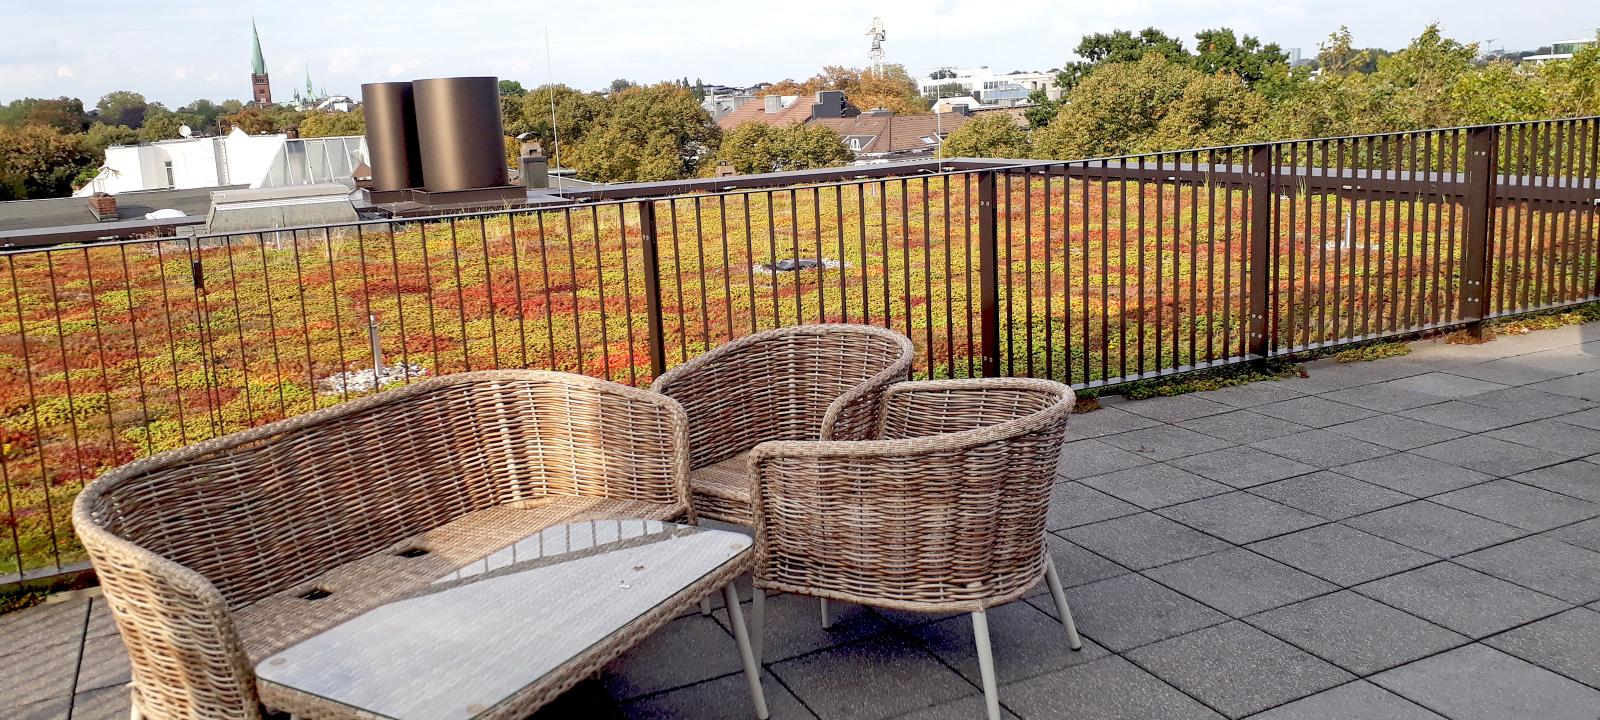 Dachgarten mit Sedum und Terrasse mit Korbstühlen